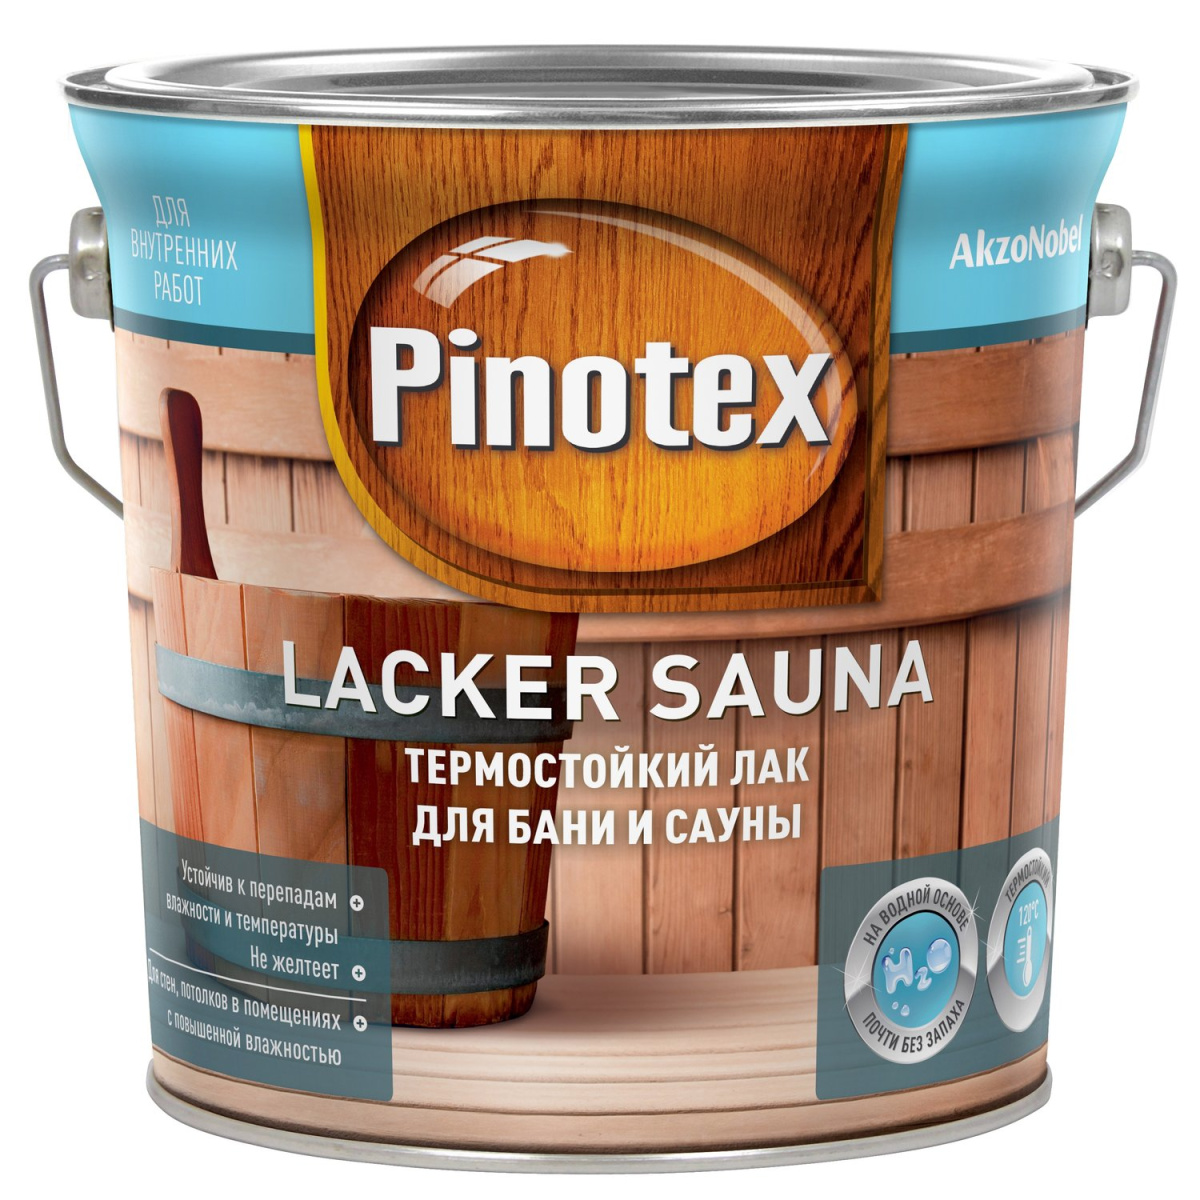 Купить лак для стен. Лак Pinotex Lacker Aqua 2,7 л. Pinotex Lacker Sauna. Pinotex Lacker Aqua. Pinotex ЛАКЕР сауна 20 лак термостойкий полуматовый 2,7л.